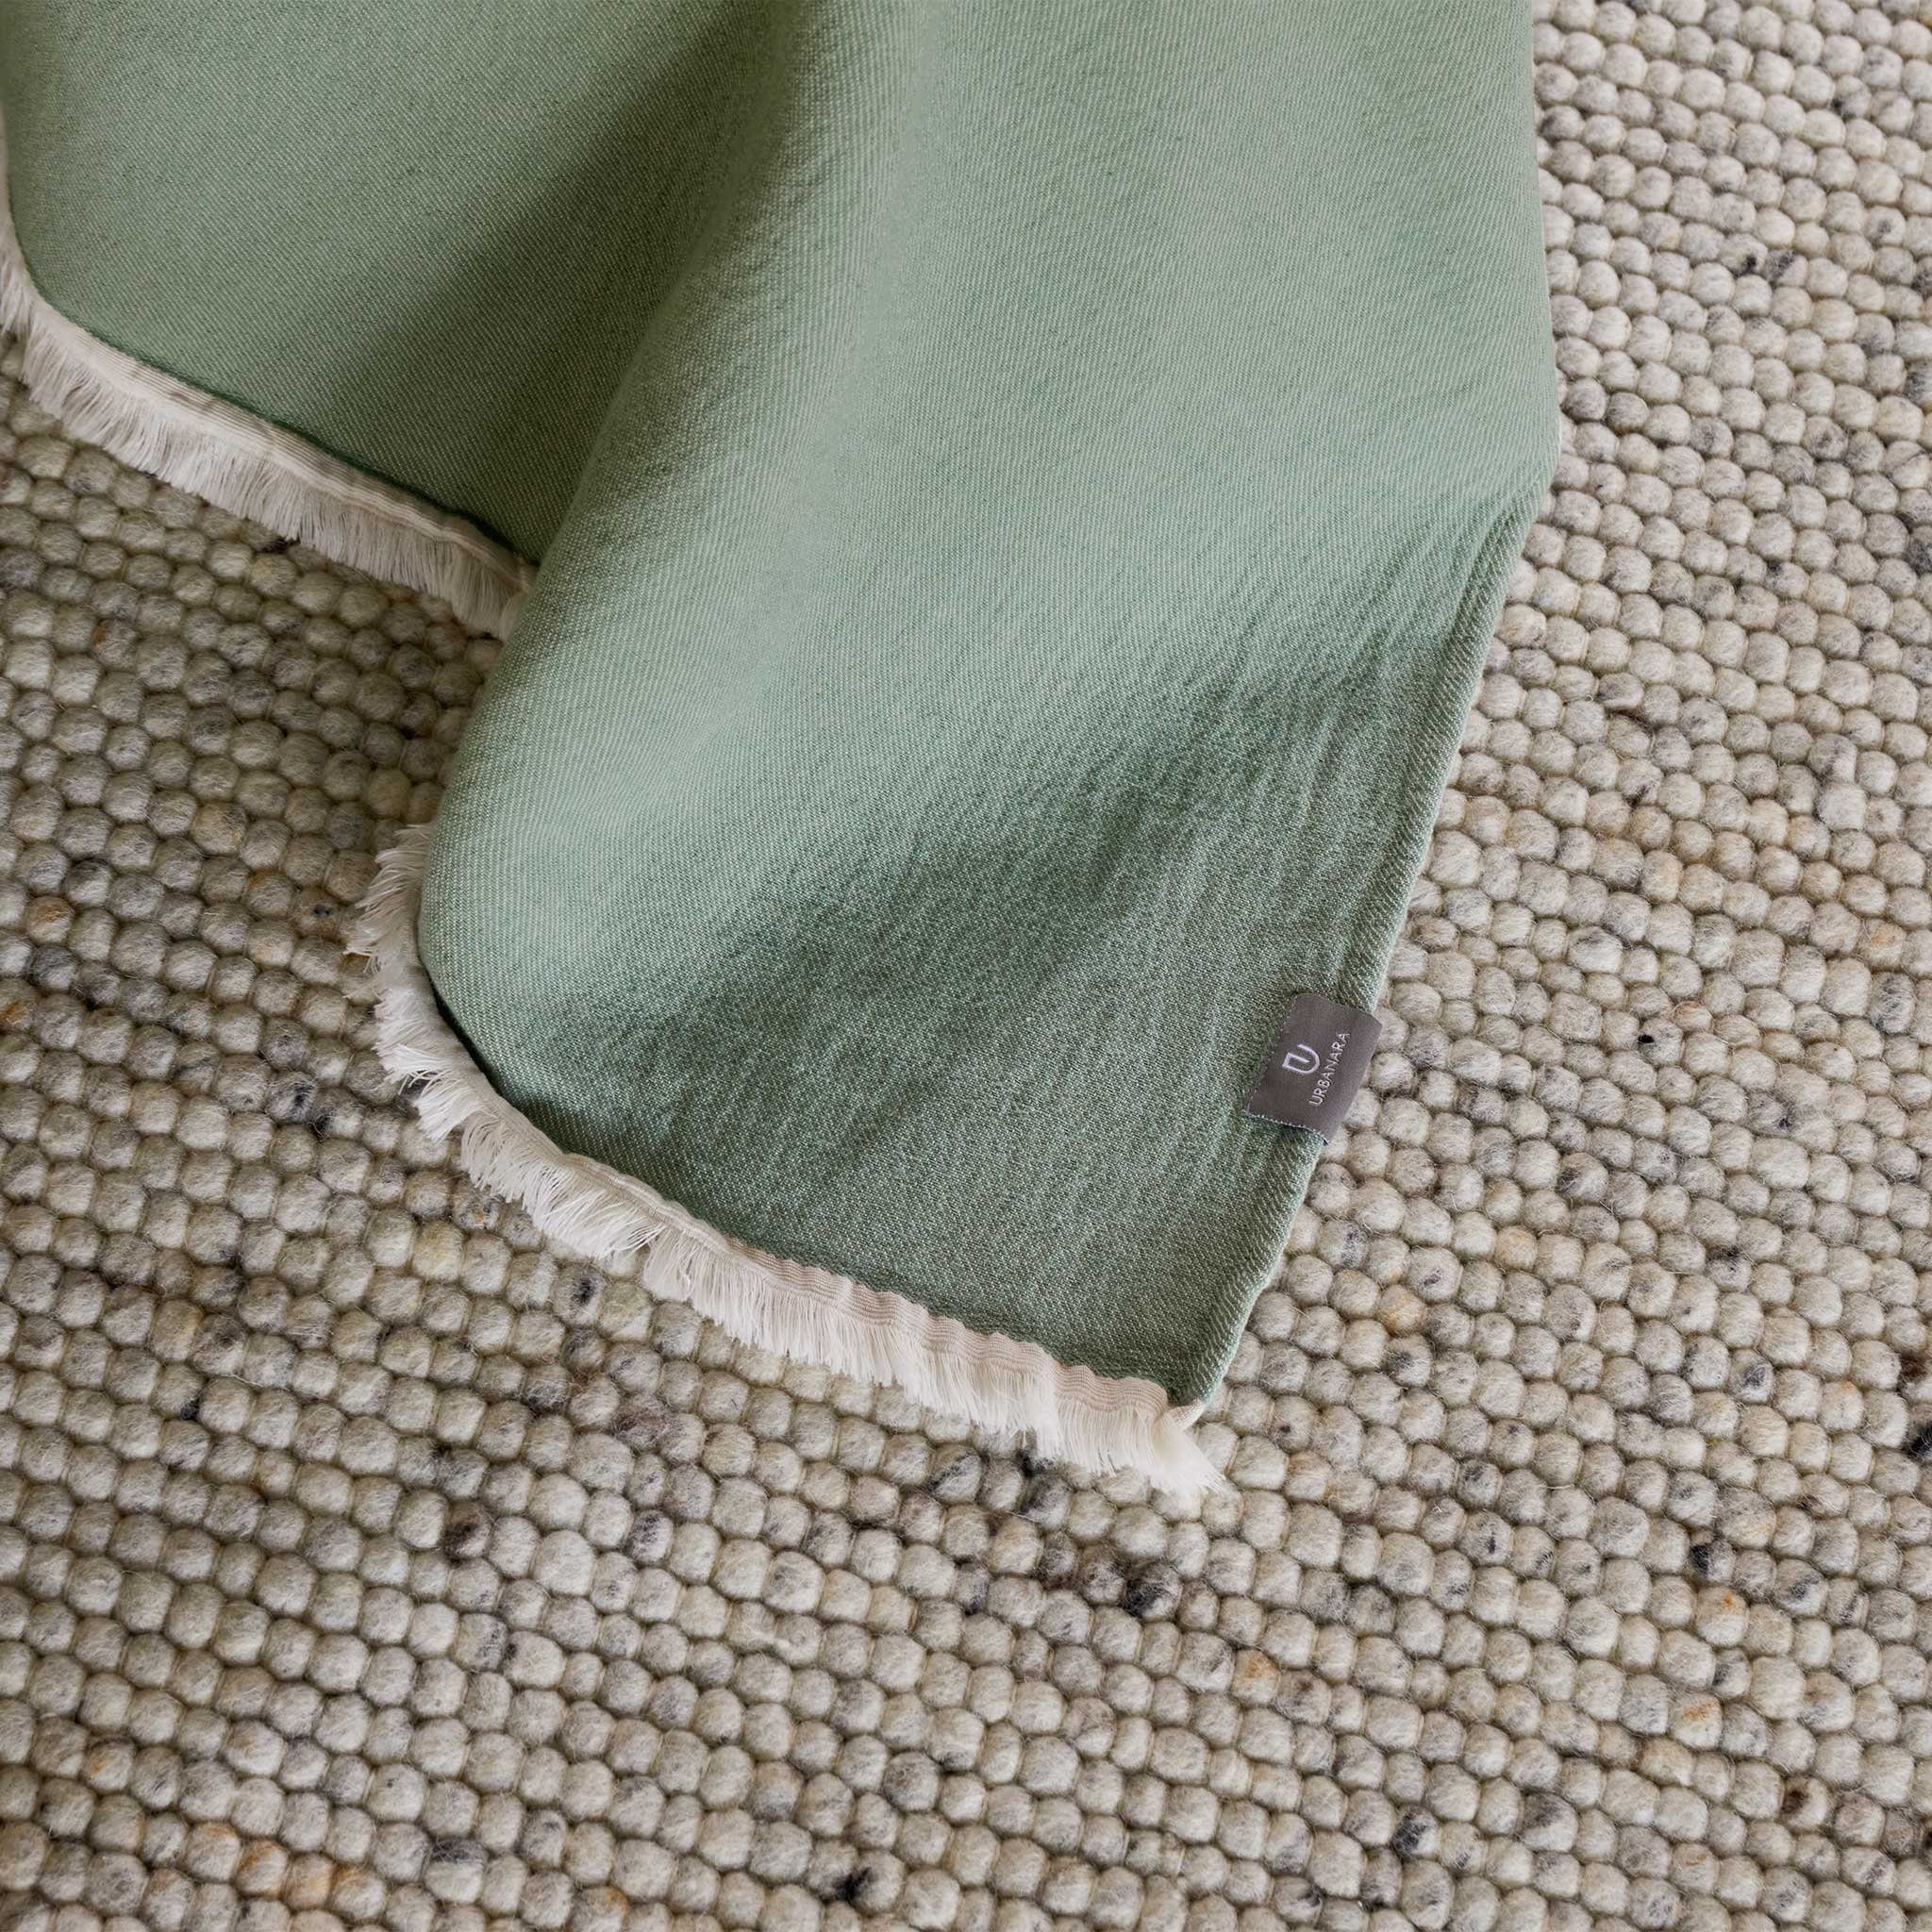 & Decke Baumwolle, Plaid Hafermilch 100% Tagesdecke Urbanara, Fransenkante Salbeigrün & - natürlichem Design & mit Nebelblau Fontao